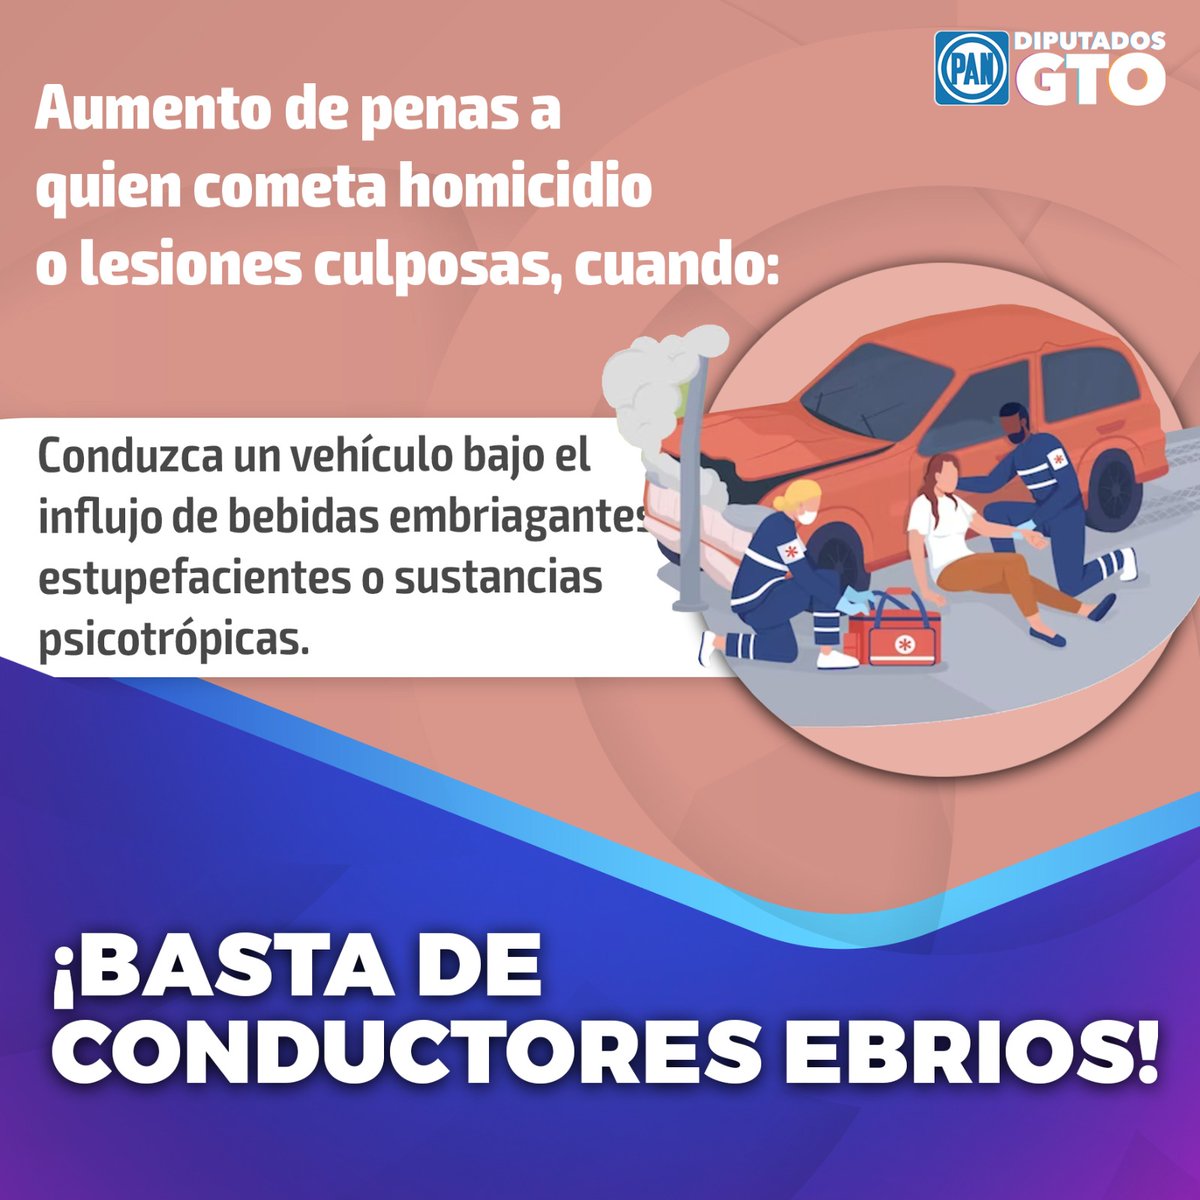 🔵🚨🟣 ¡CUÉNTAME MÁS!

Las diputadas y diputados del PAN fortalecen las acciones contra los conductores ebrios.
#SomosAccion
#Noticias